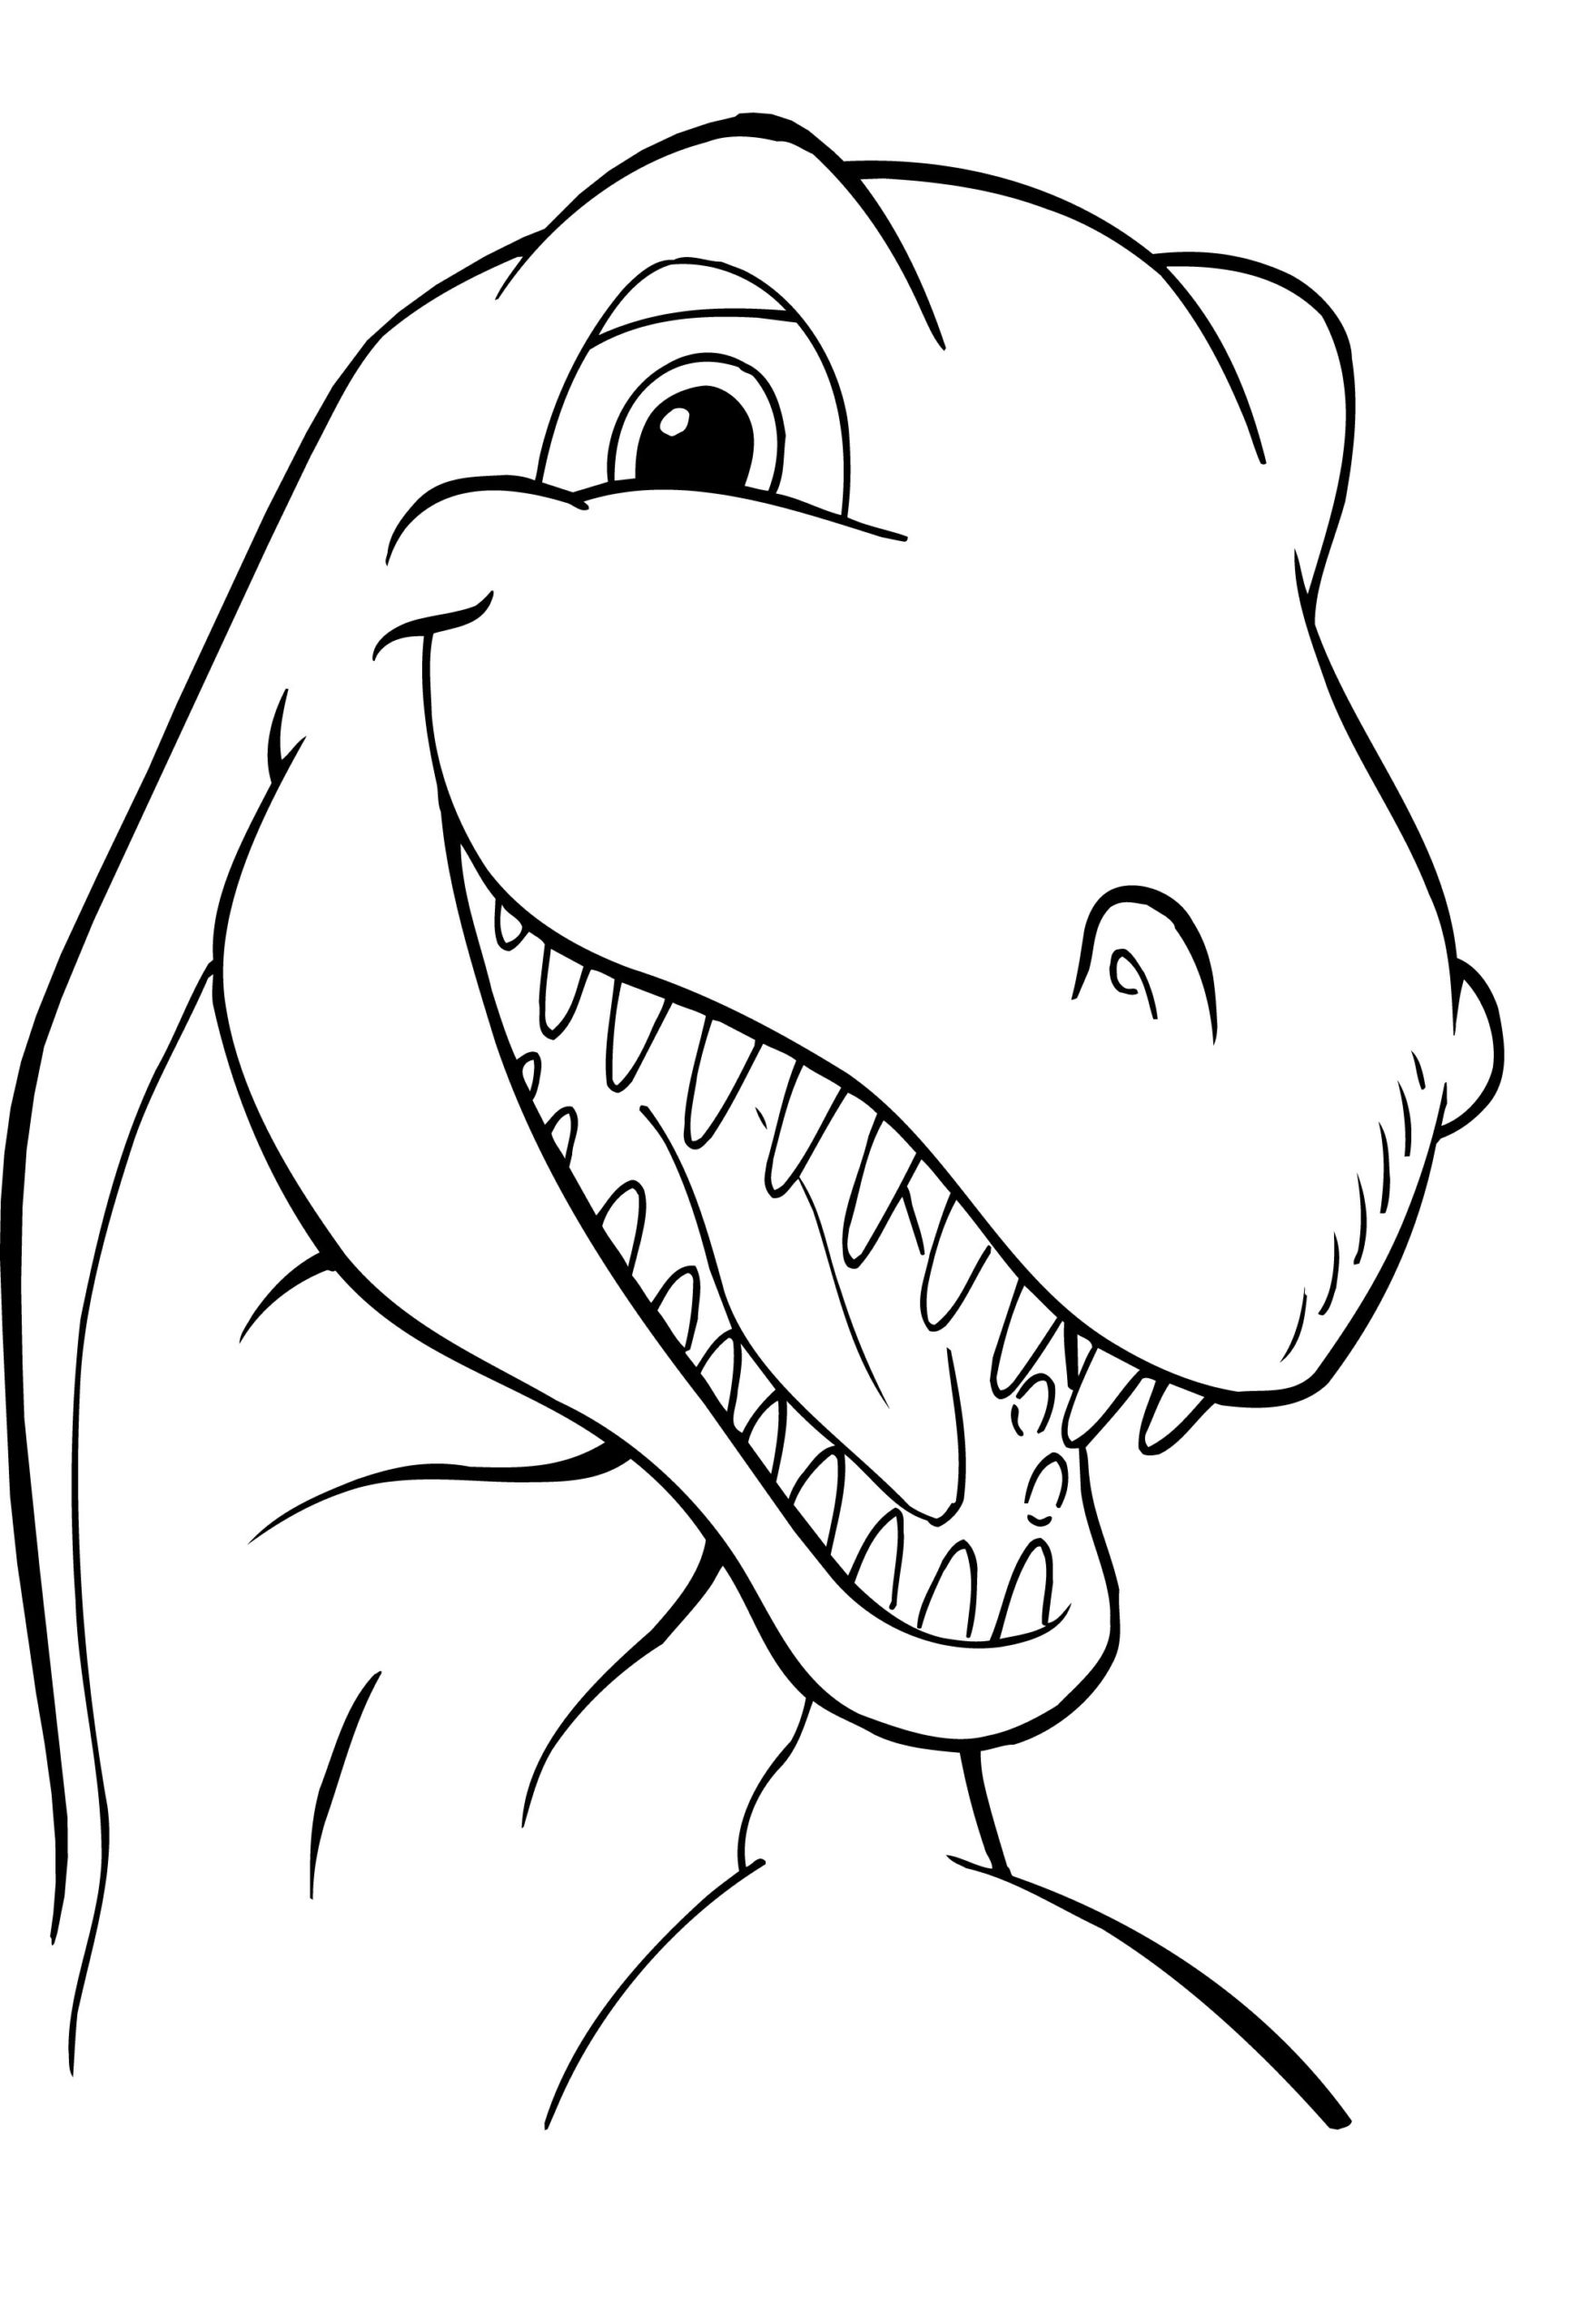 dinosaur-coloring-sheets-dinosaur-coloring-pages-printable